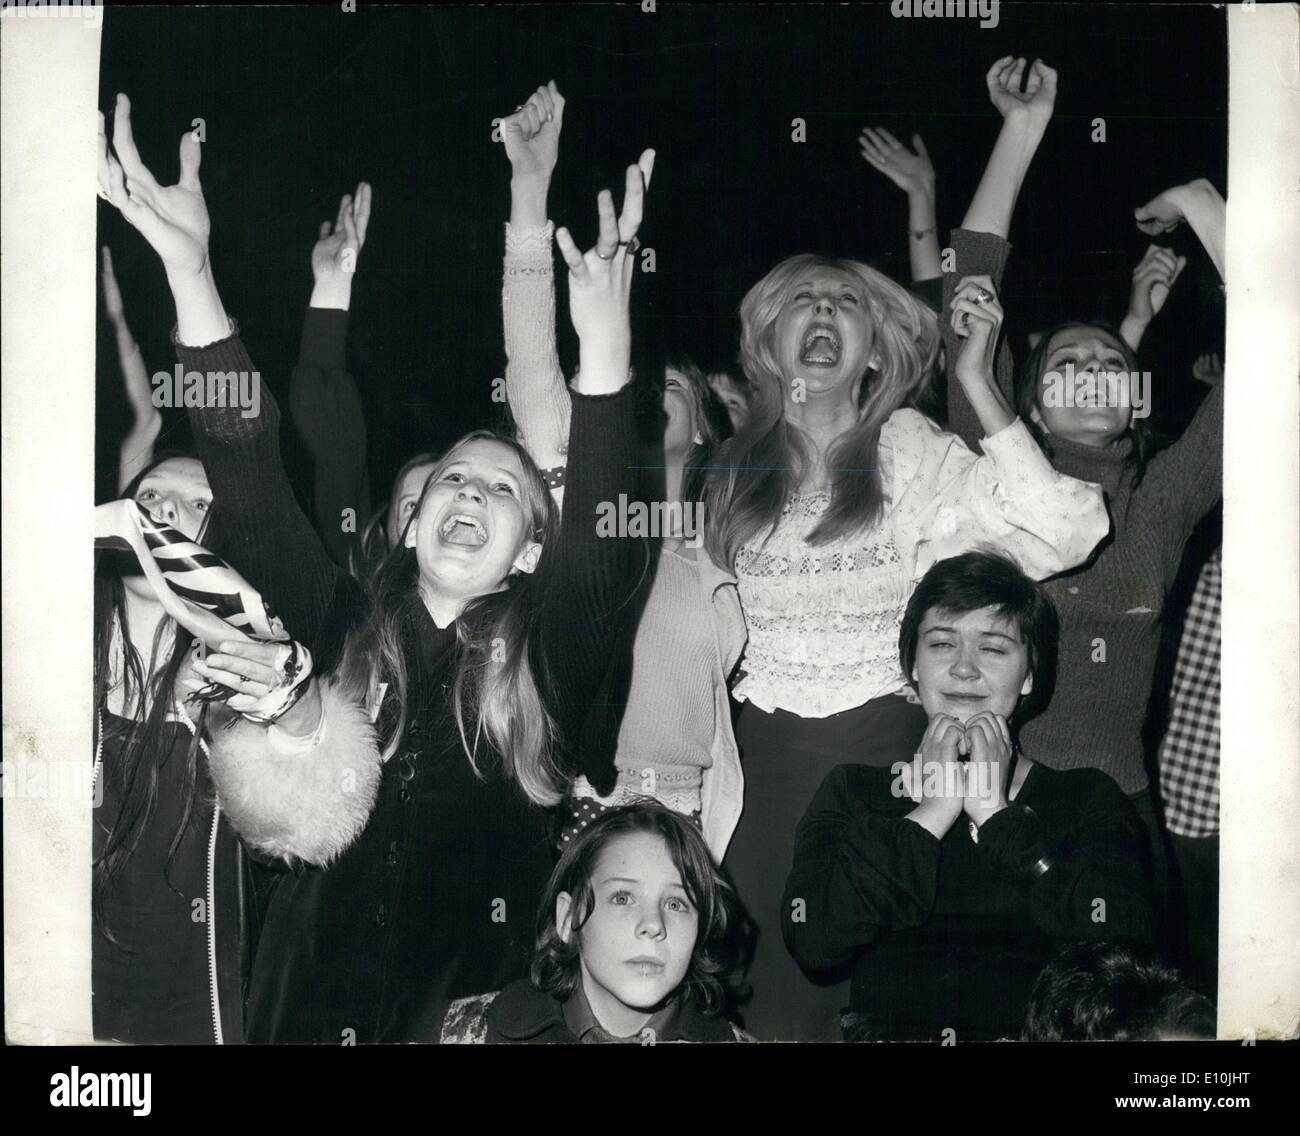 Mar. 03, 1973 - David Cassidy donne concert à Wembley : Mille cris de fans, s'est hier soir, le concert donné par l'Américain de 22 ans pop star David Cassidy , à l'Empire Pool, Wembley. Photo montre Screaming fans photographié à la dernière nuit de concert à l'Empire Pool, Wembly. Banque D'Images